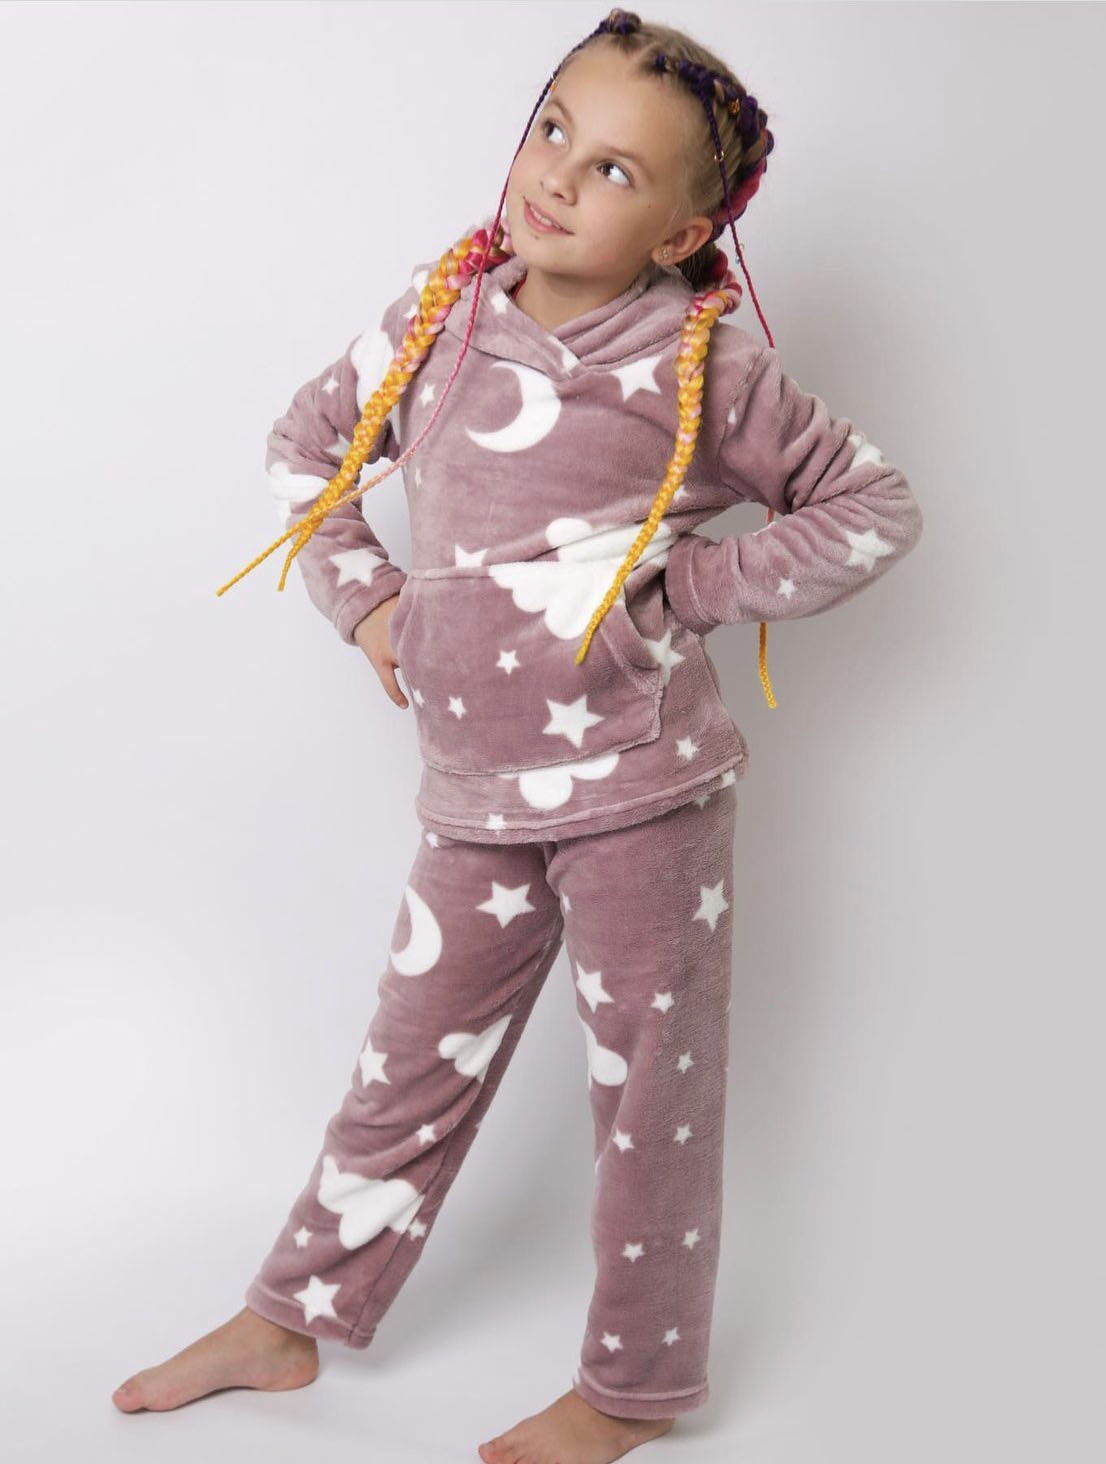 Теплая пижама вельсофт для девочки Фламинго пудра 887-910 - цена